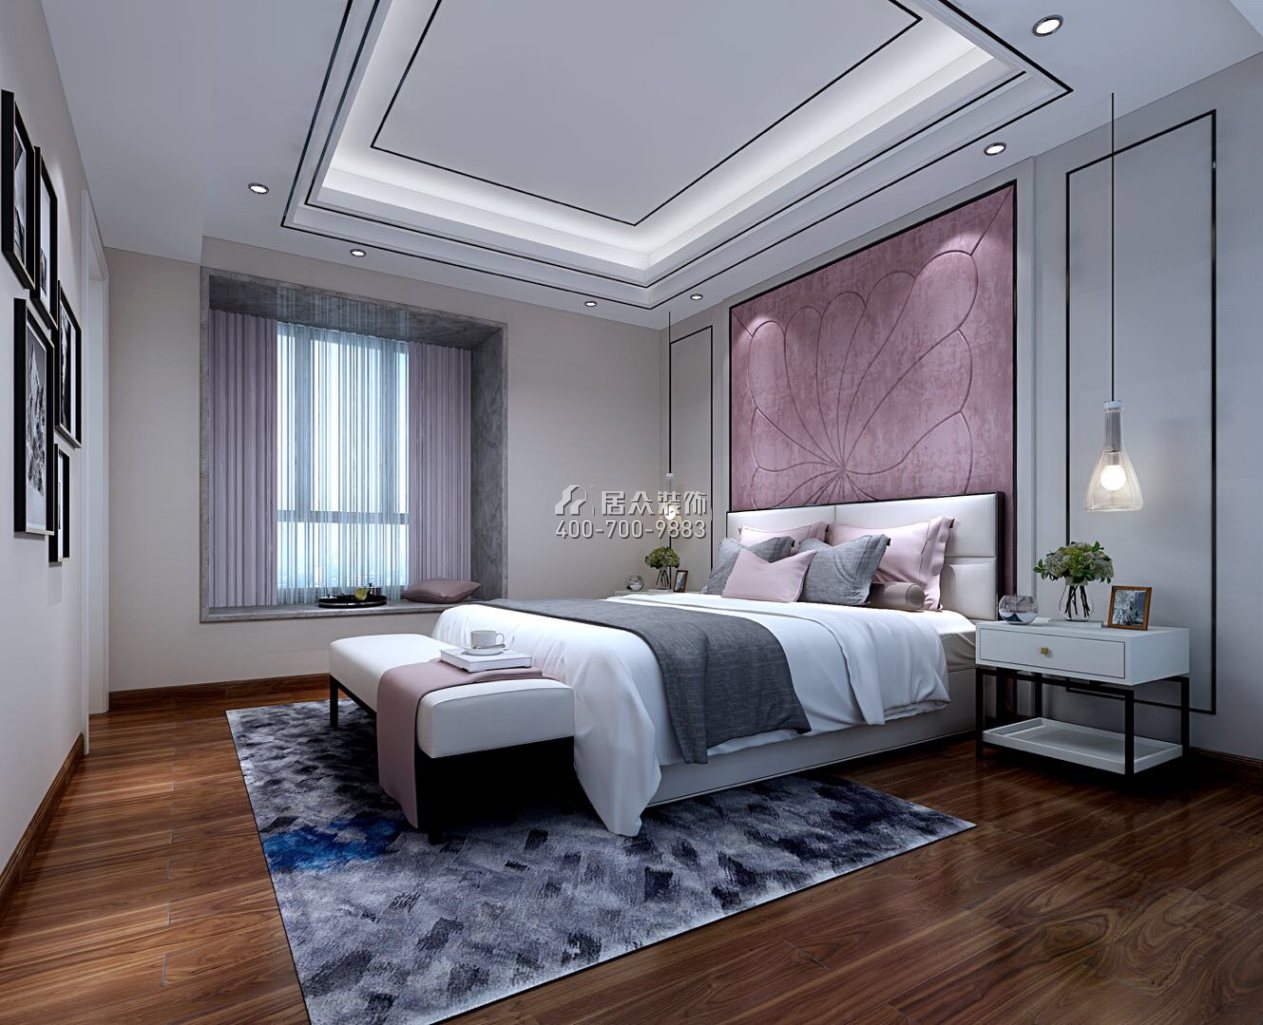 御水豪庭260平方米中式风格复式户型卧室装修效果图